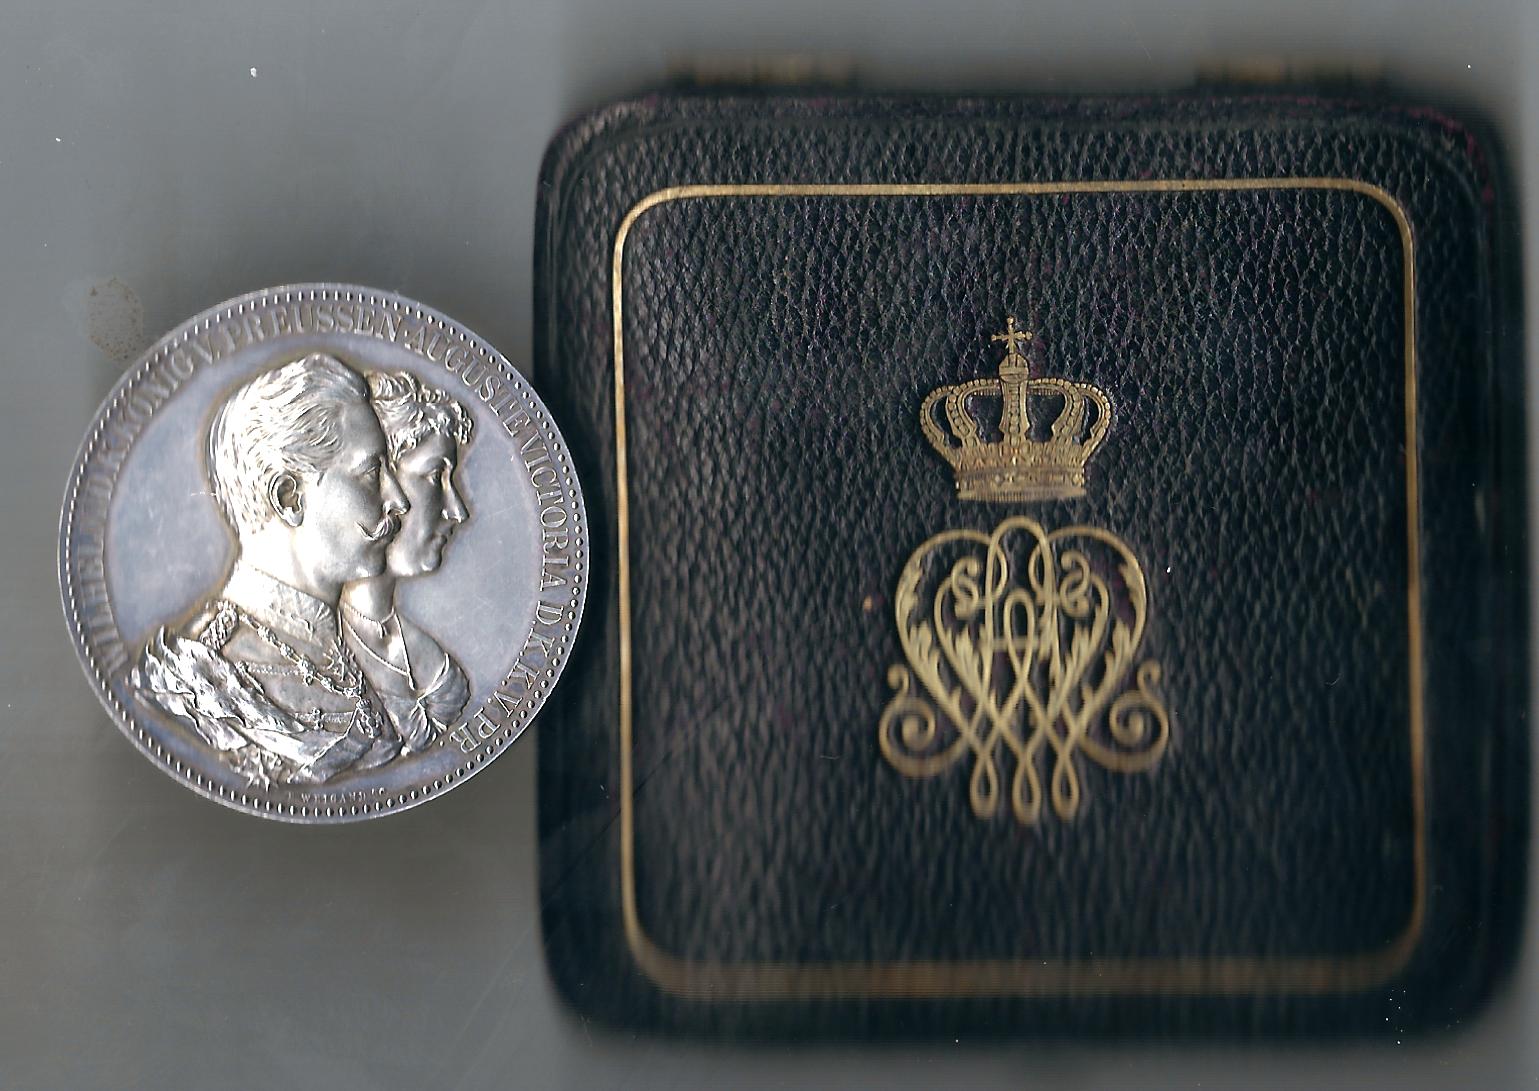  Medaille Preussen Ehejubiläum Wilhelm II + Augusta in vz-st Goldankauf Koblenz Frank Maurer C798   